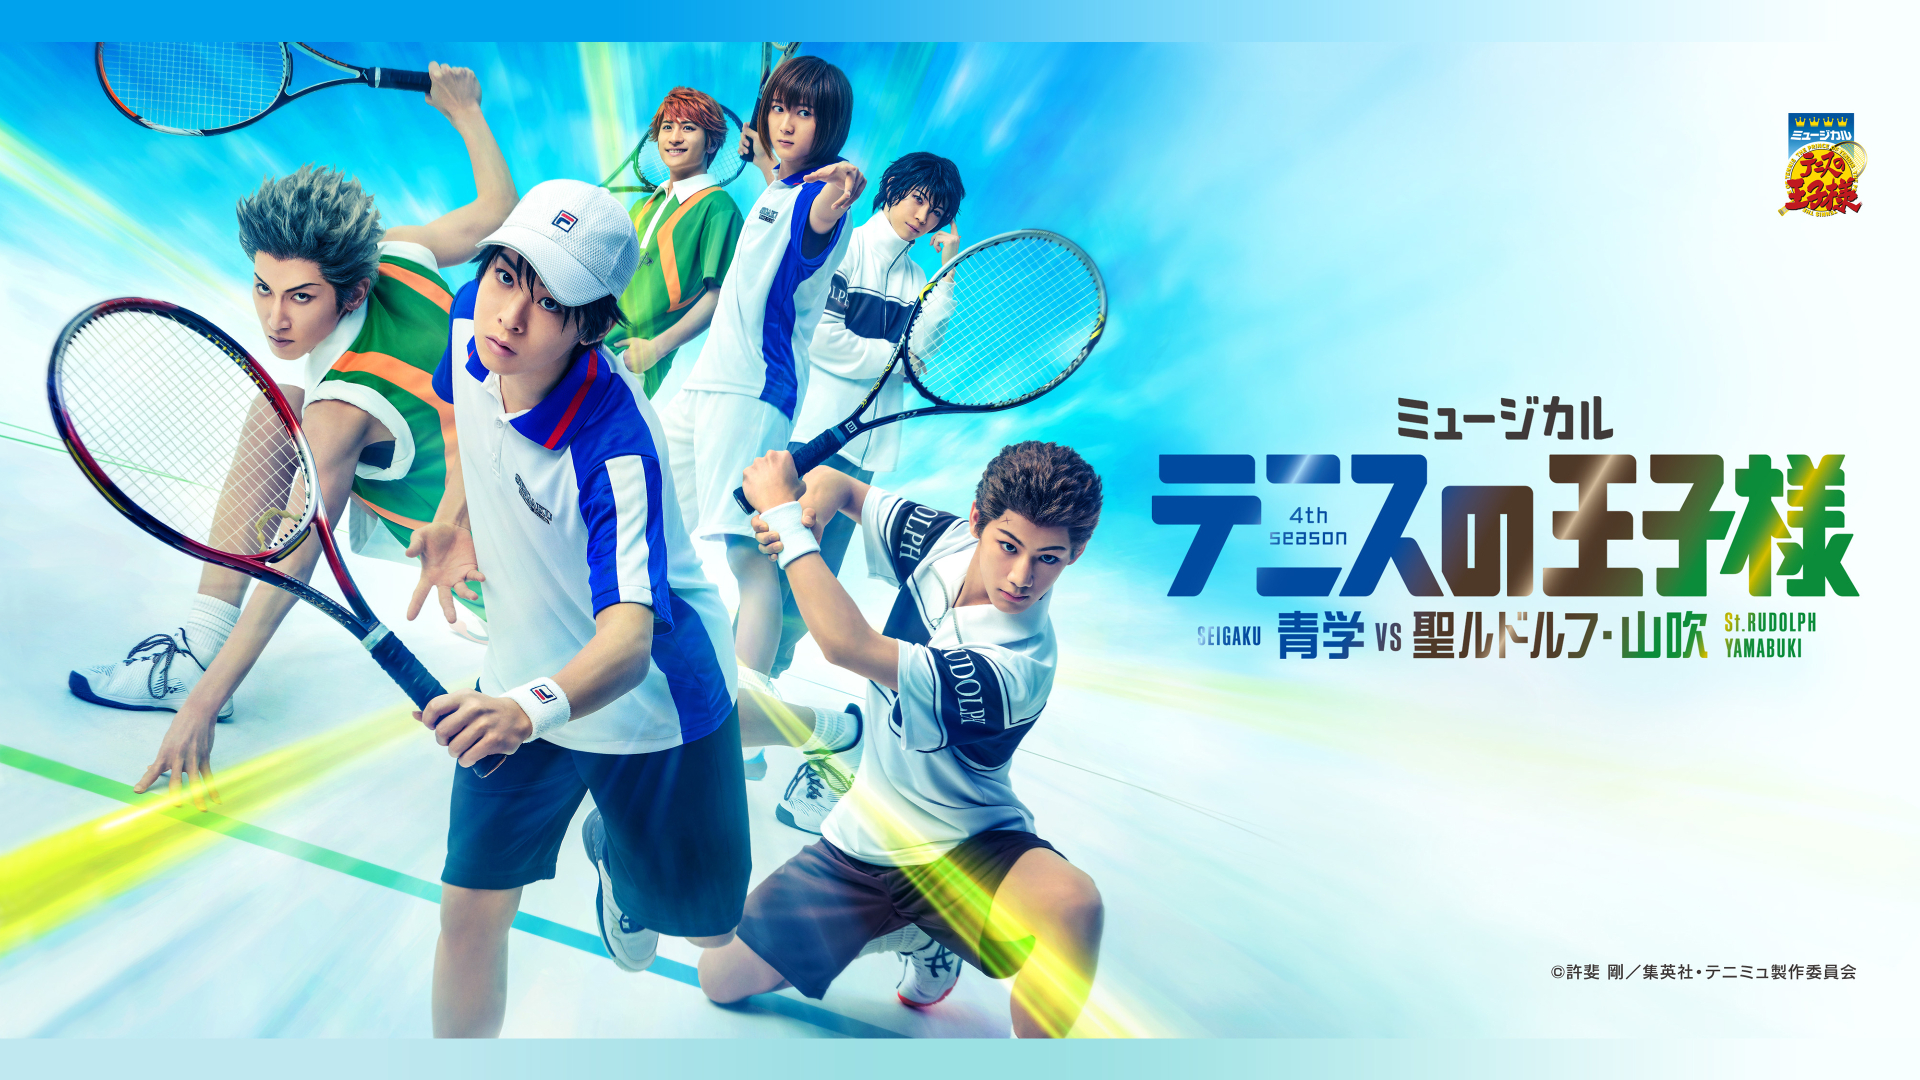 ミュージカル『テニスの王子様』4thシーズン 青学(せいがく)vs聖